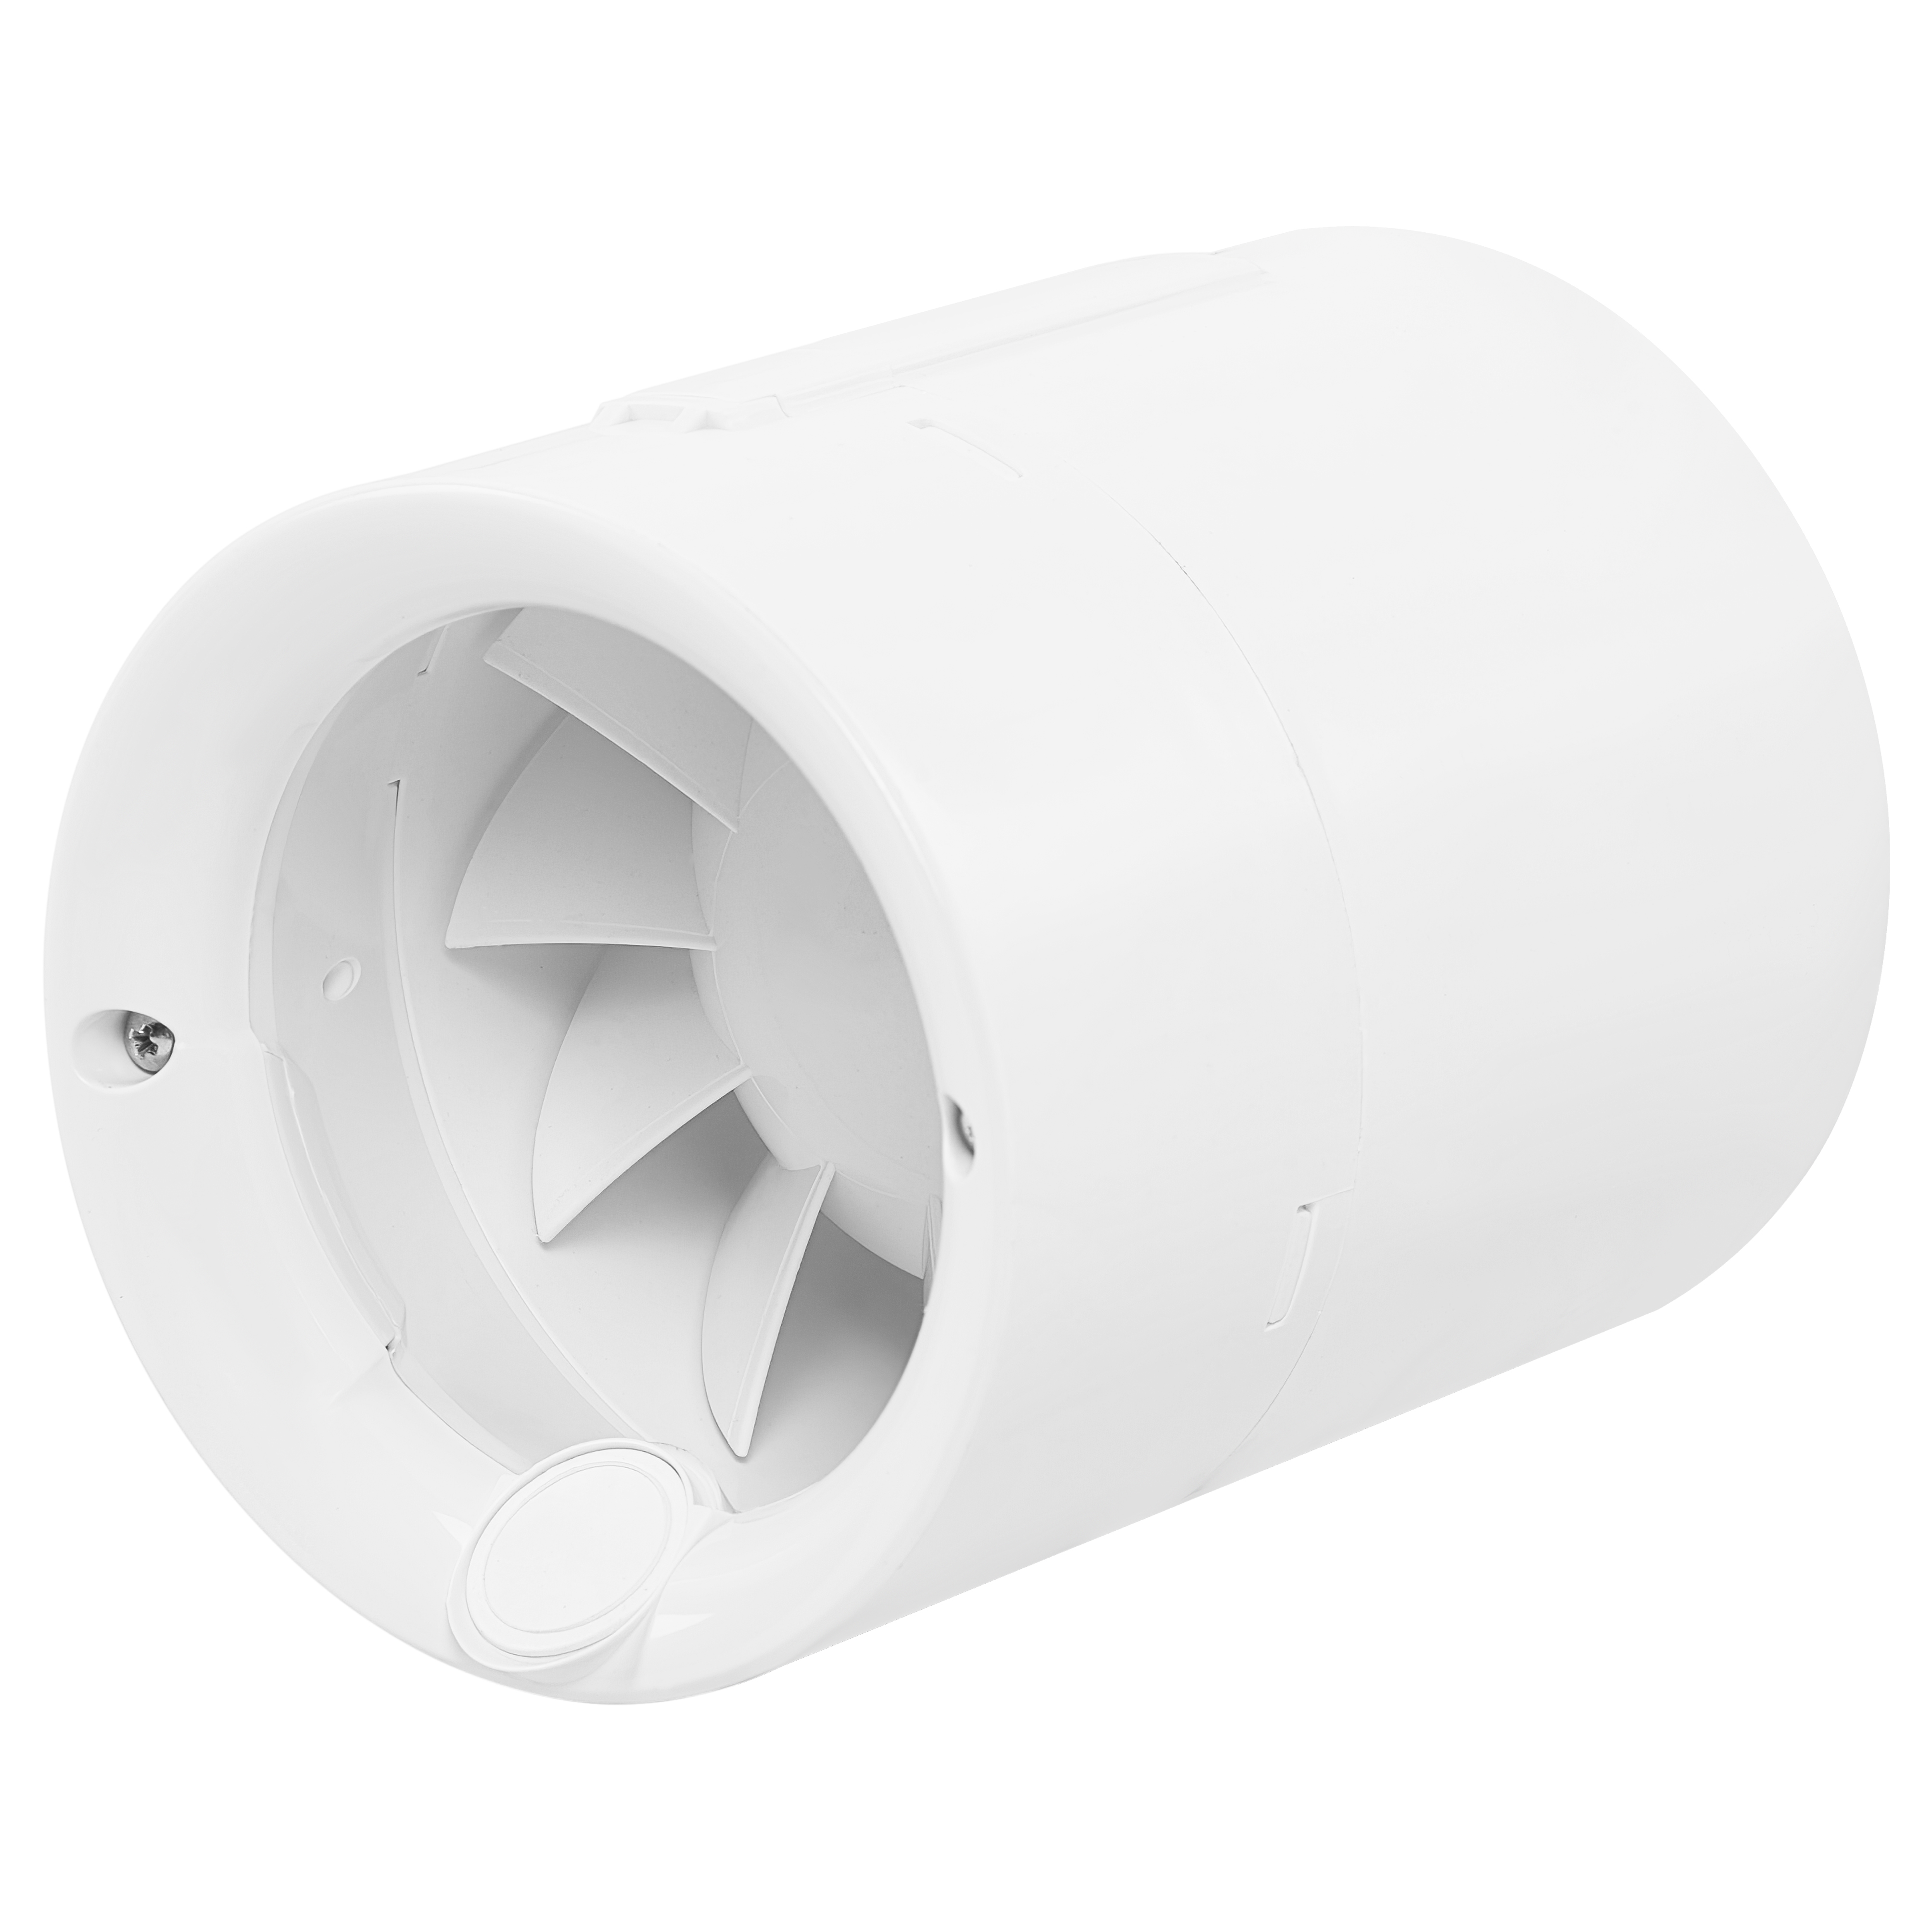 Характеристики вытяжной канальный вентилятор 100 мм Soler&Palau Silentub-100